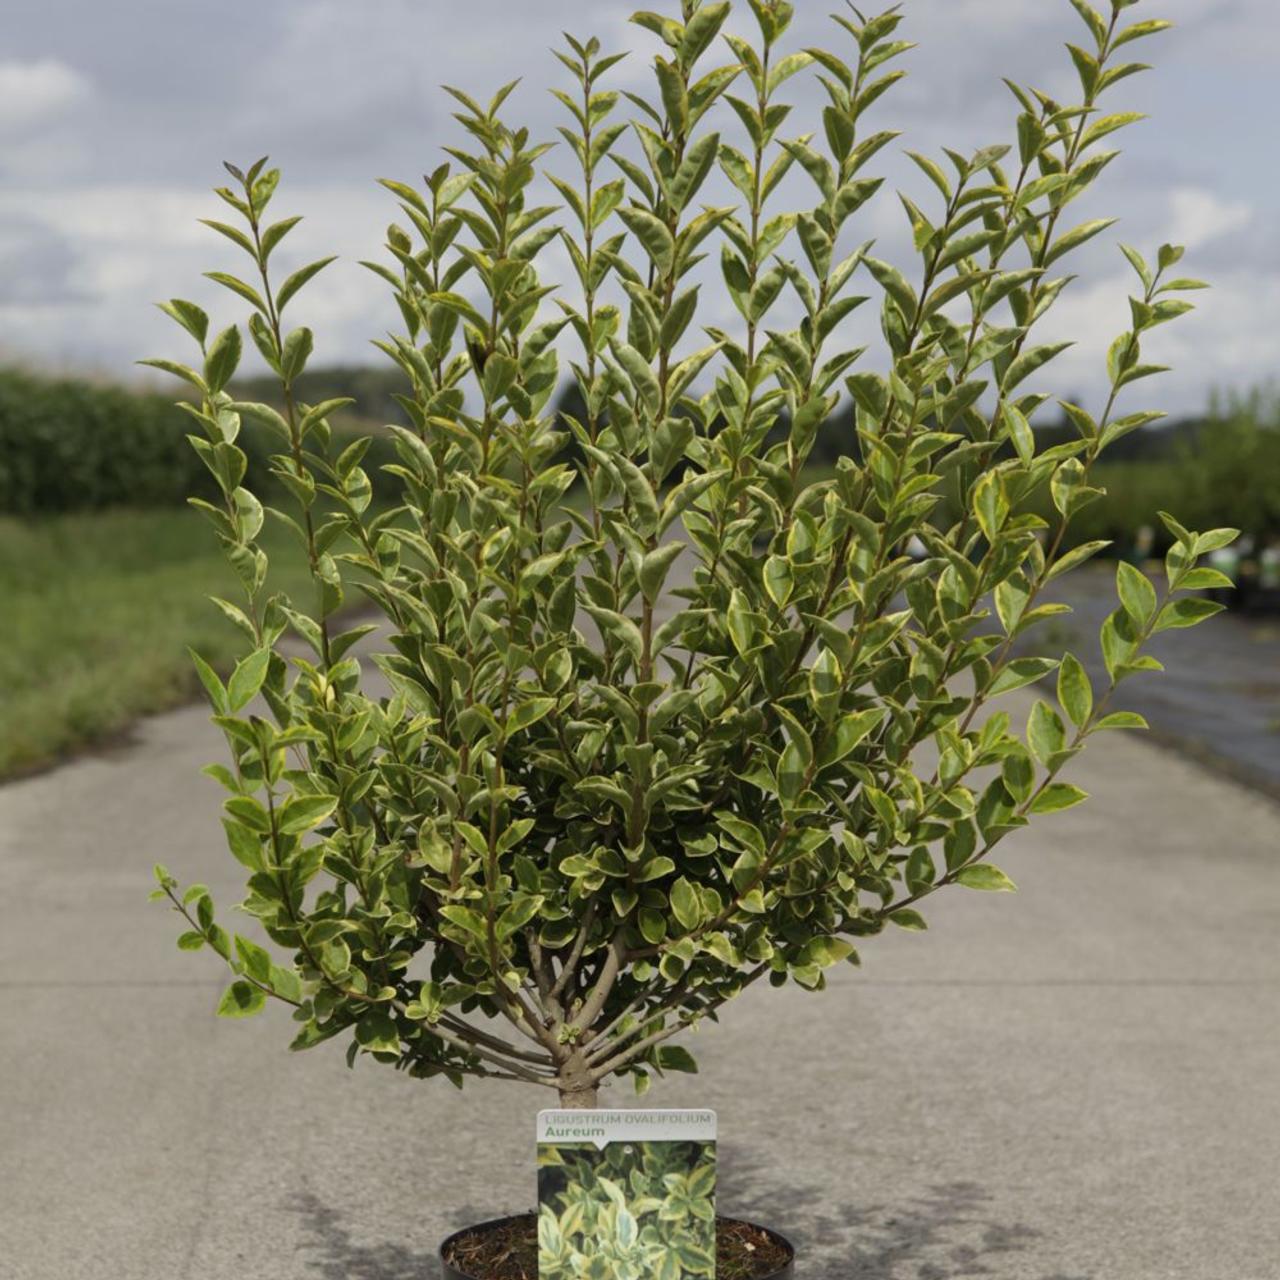 ligustrum ovalifolium 'aureum' - kaufen sie pflanzen bei coolplants